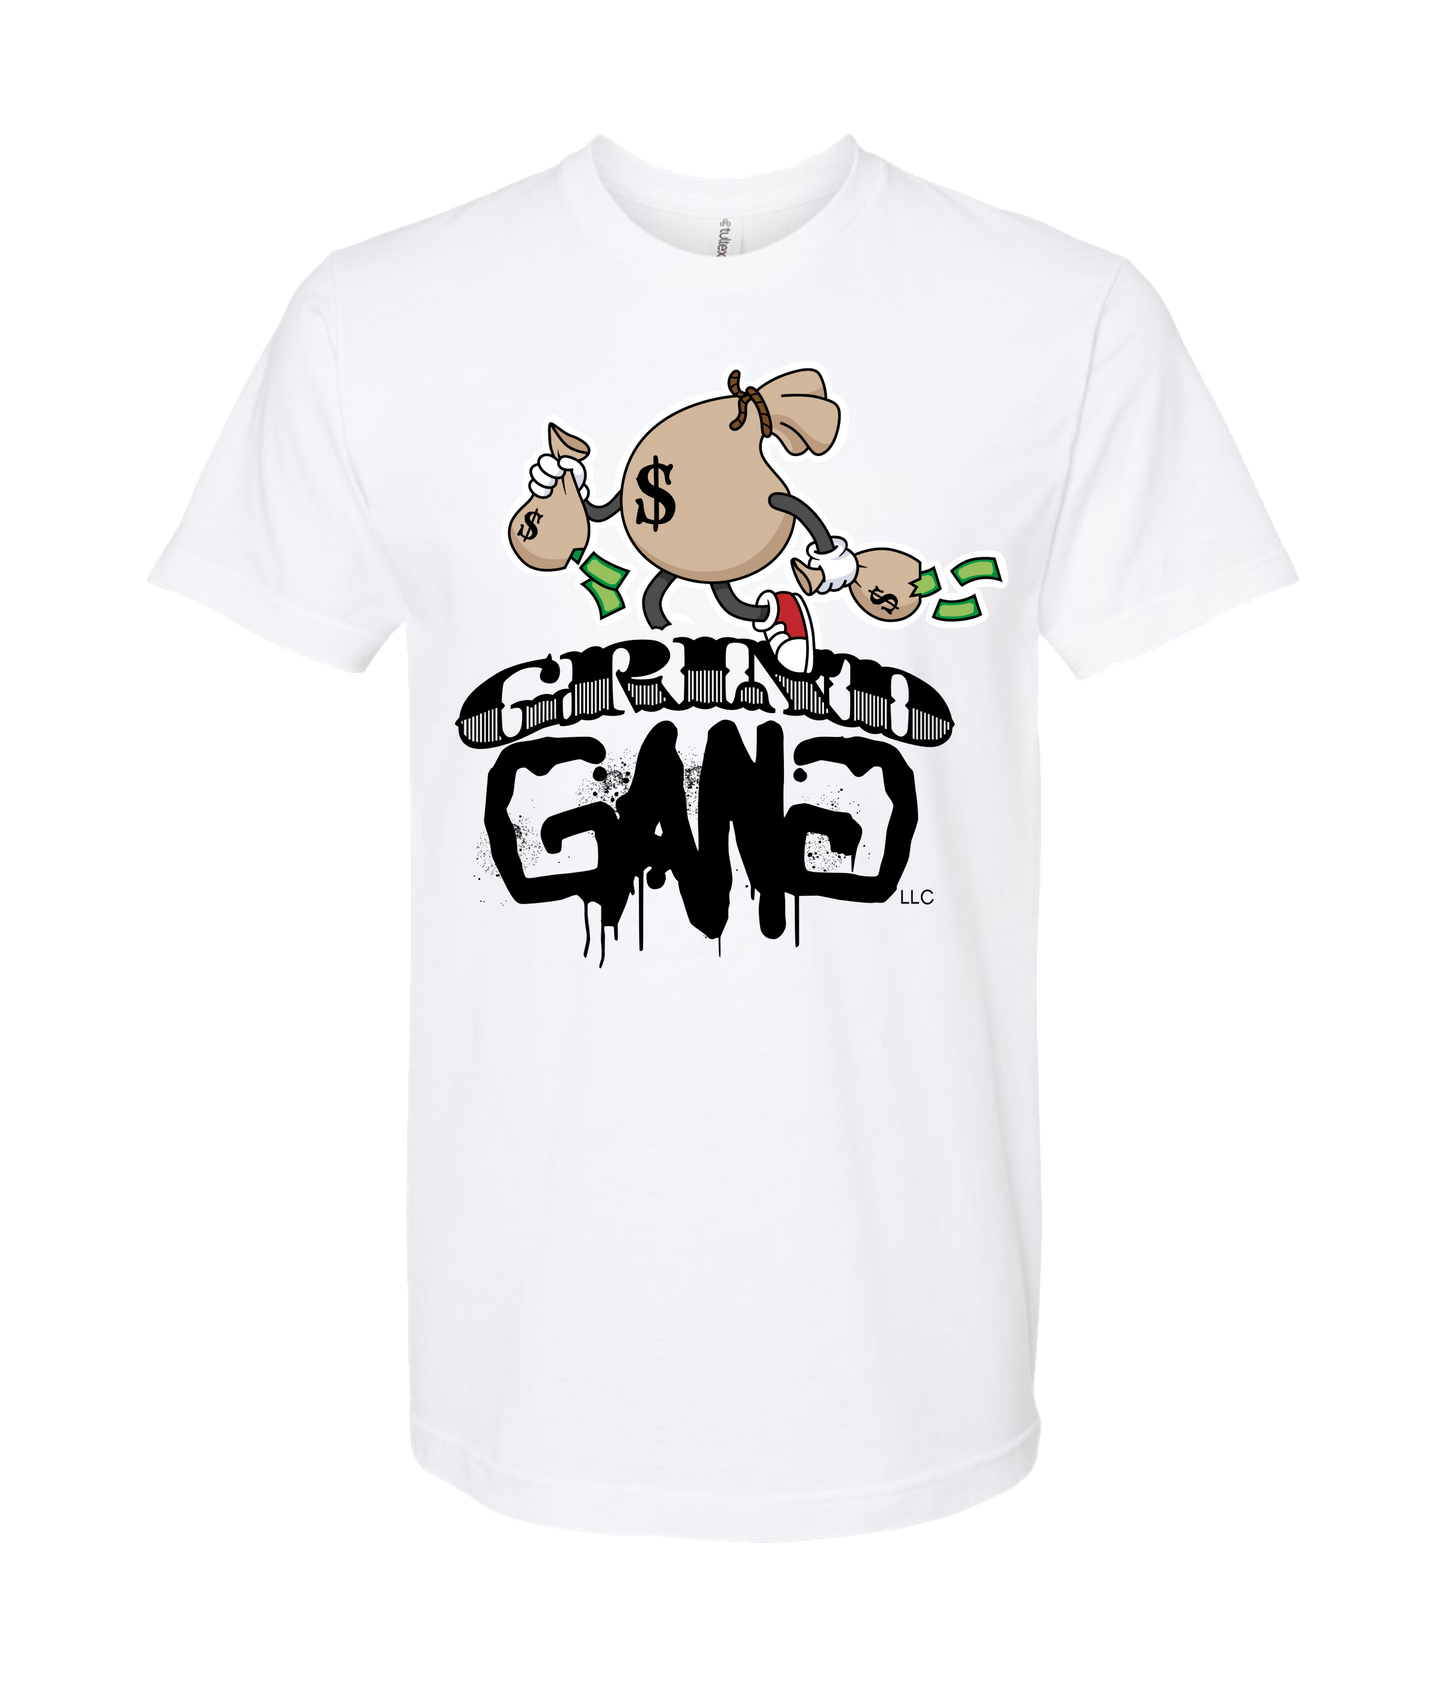 GRIND GANG ENT. LLC - MONEY BAG LOGO 1 - White T-Shirt